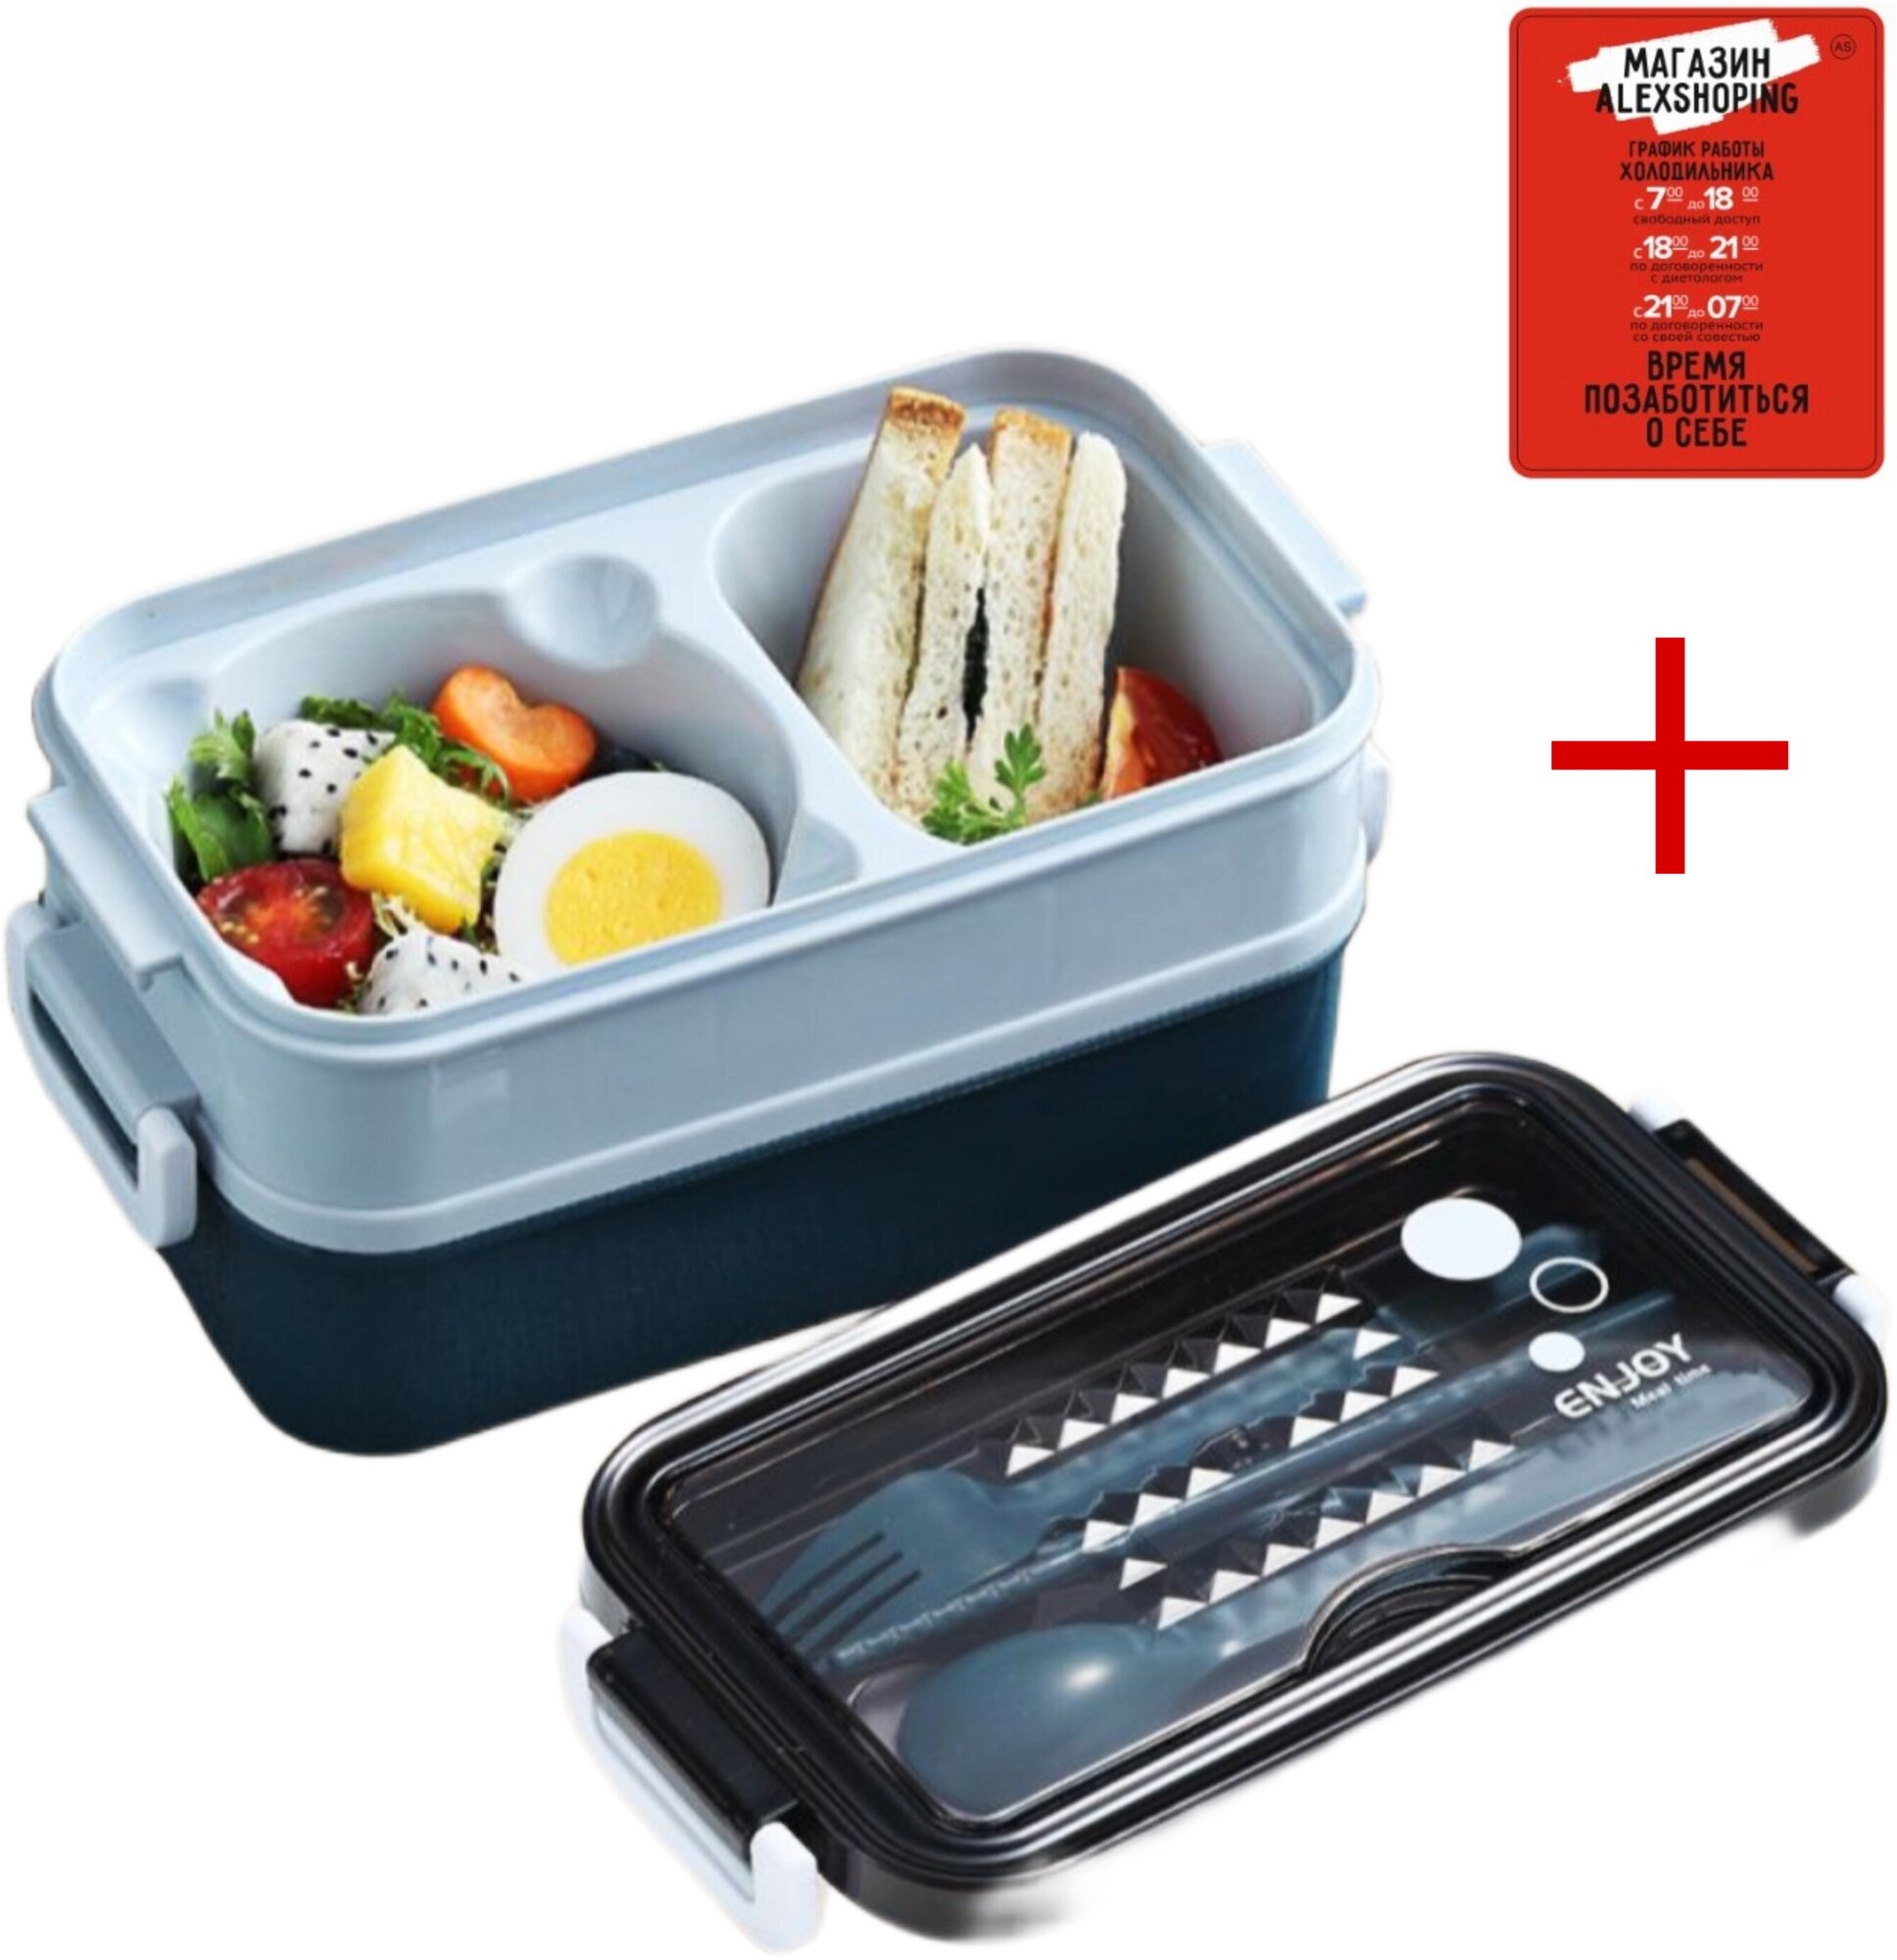 Контейнер для еды, пластиковый ланч бокс с приборами + Авторский магнит AlexShoping на холодильник